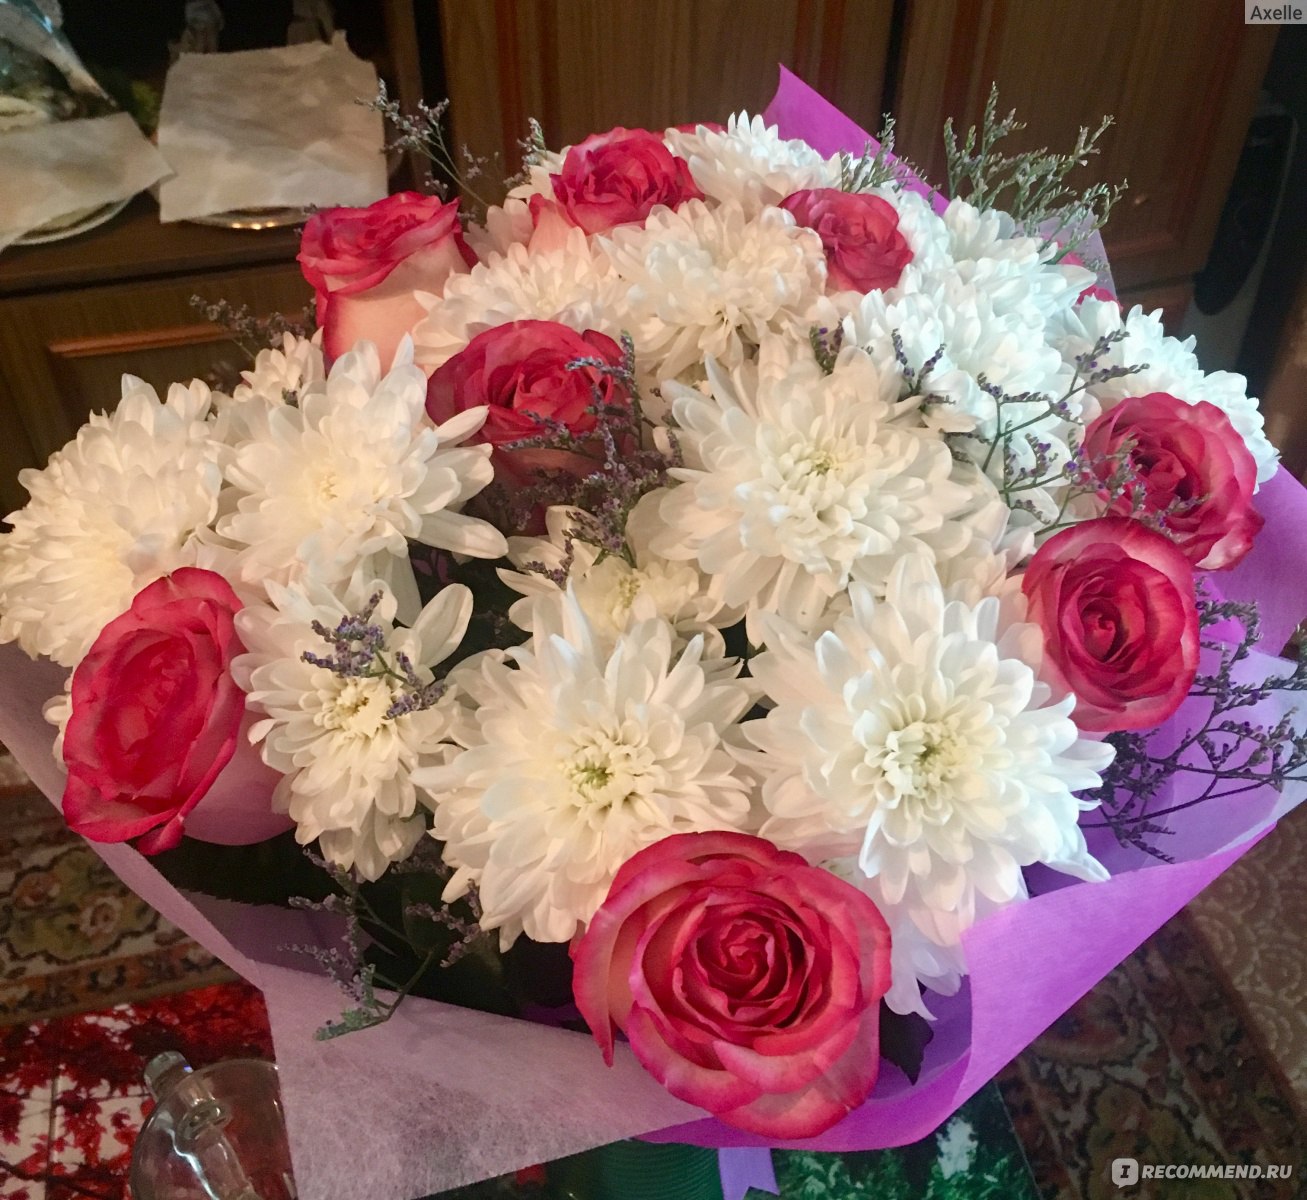 Отзывы о доставке цветов флорист доставка цветов на дом по спб